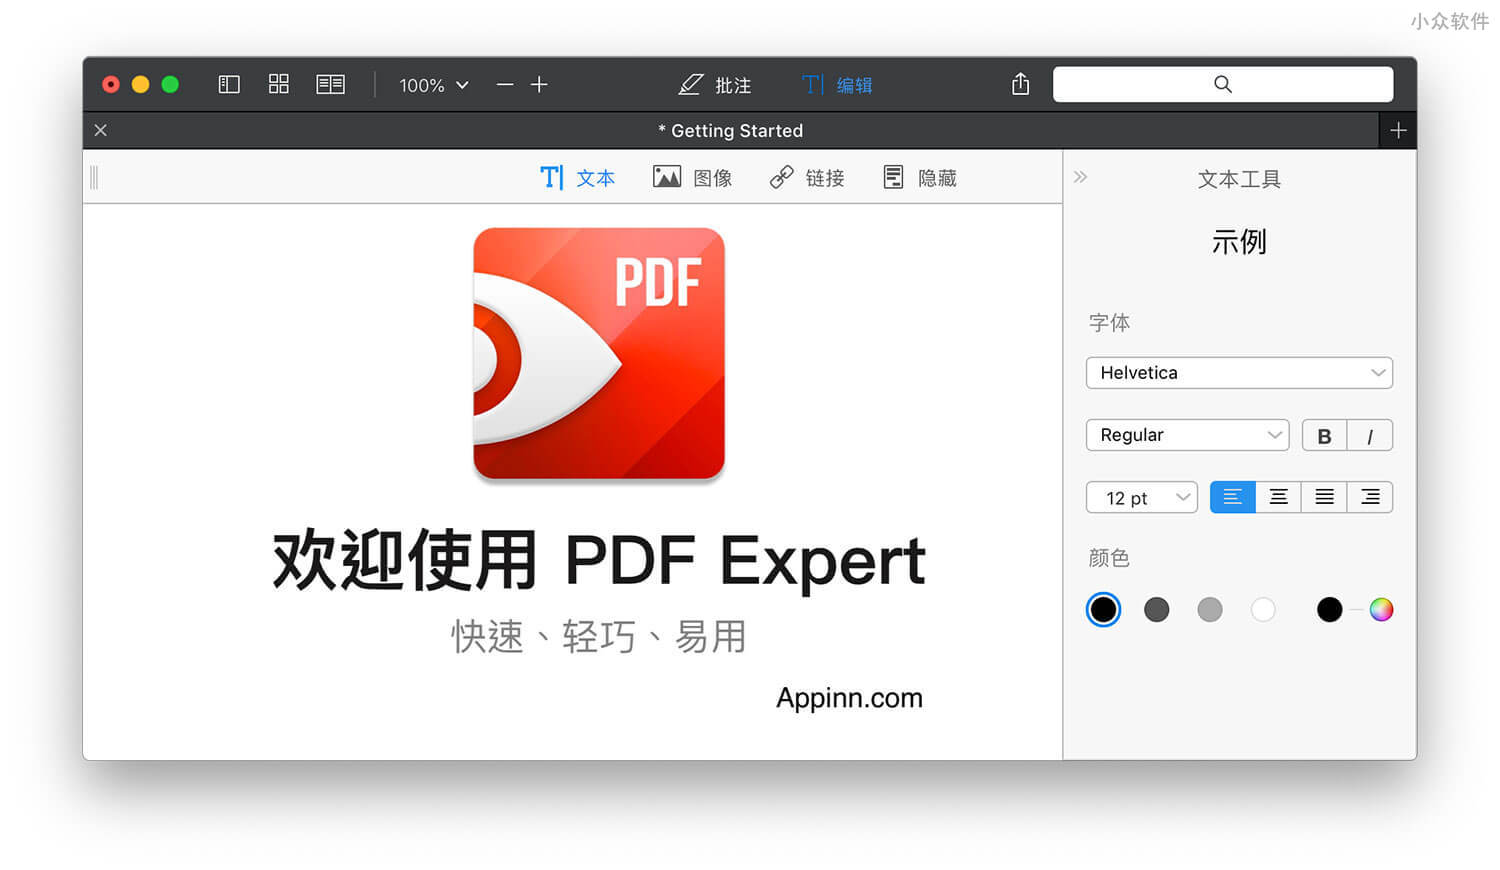 全能 PDF 阅读/编辑工具 PDF Expert 涨价前的最后一次 5 折促销 [macOS] 1